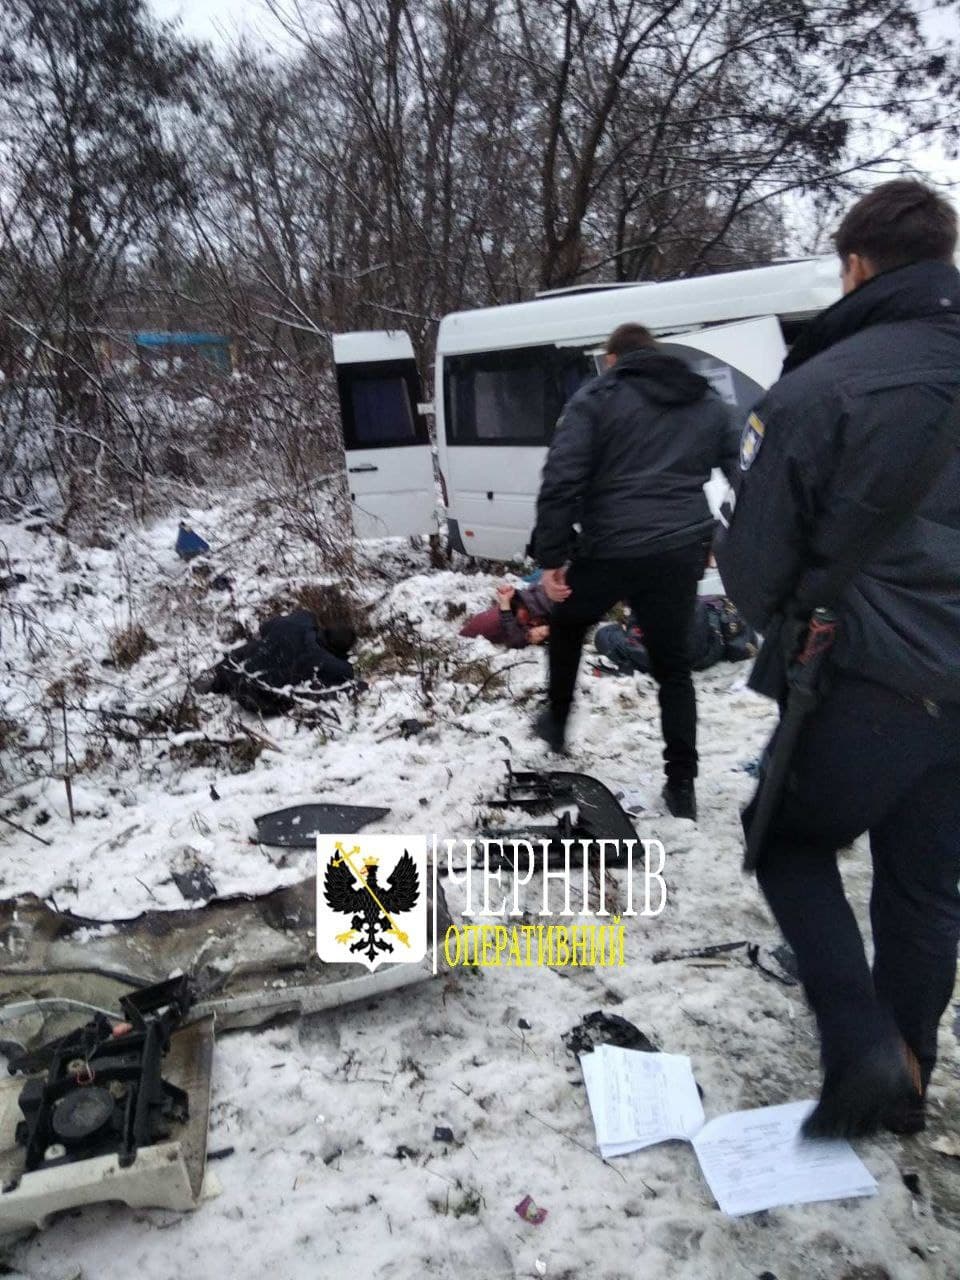 Моторошна ДТП на Чернігівщині: загинули 10 пасажирів маршрутки (Фото 18+. ОНОВЛЕНО)